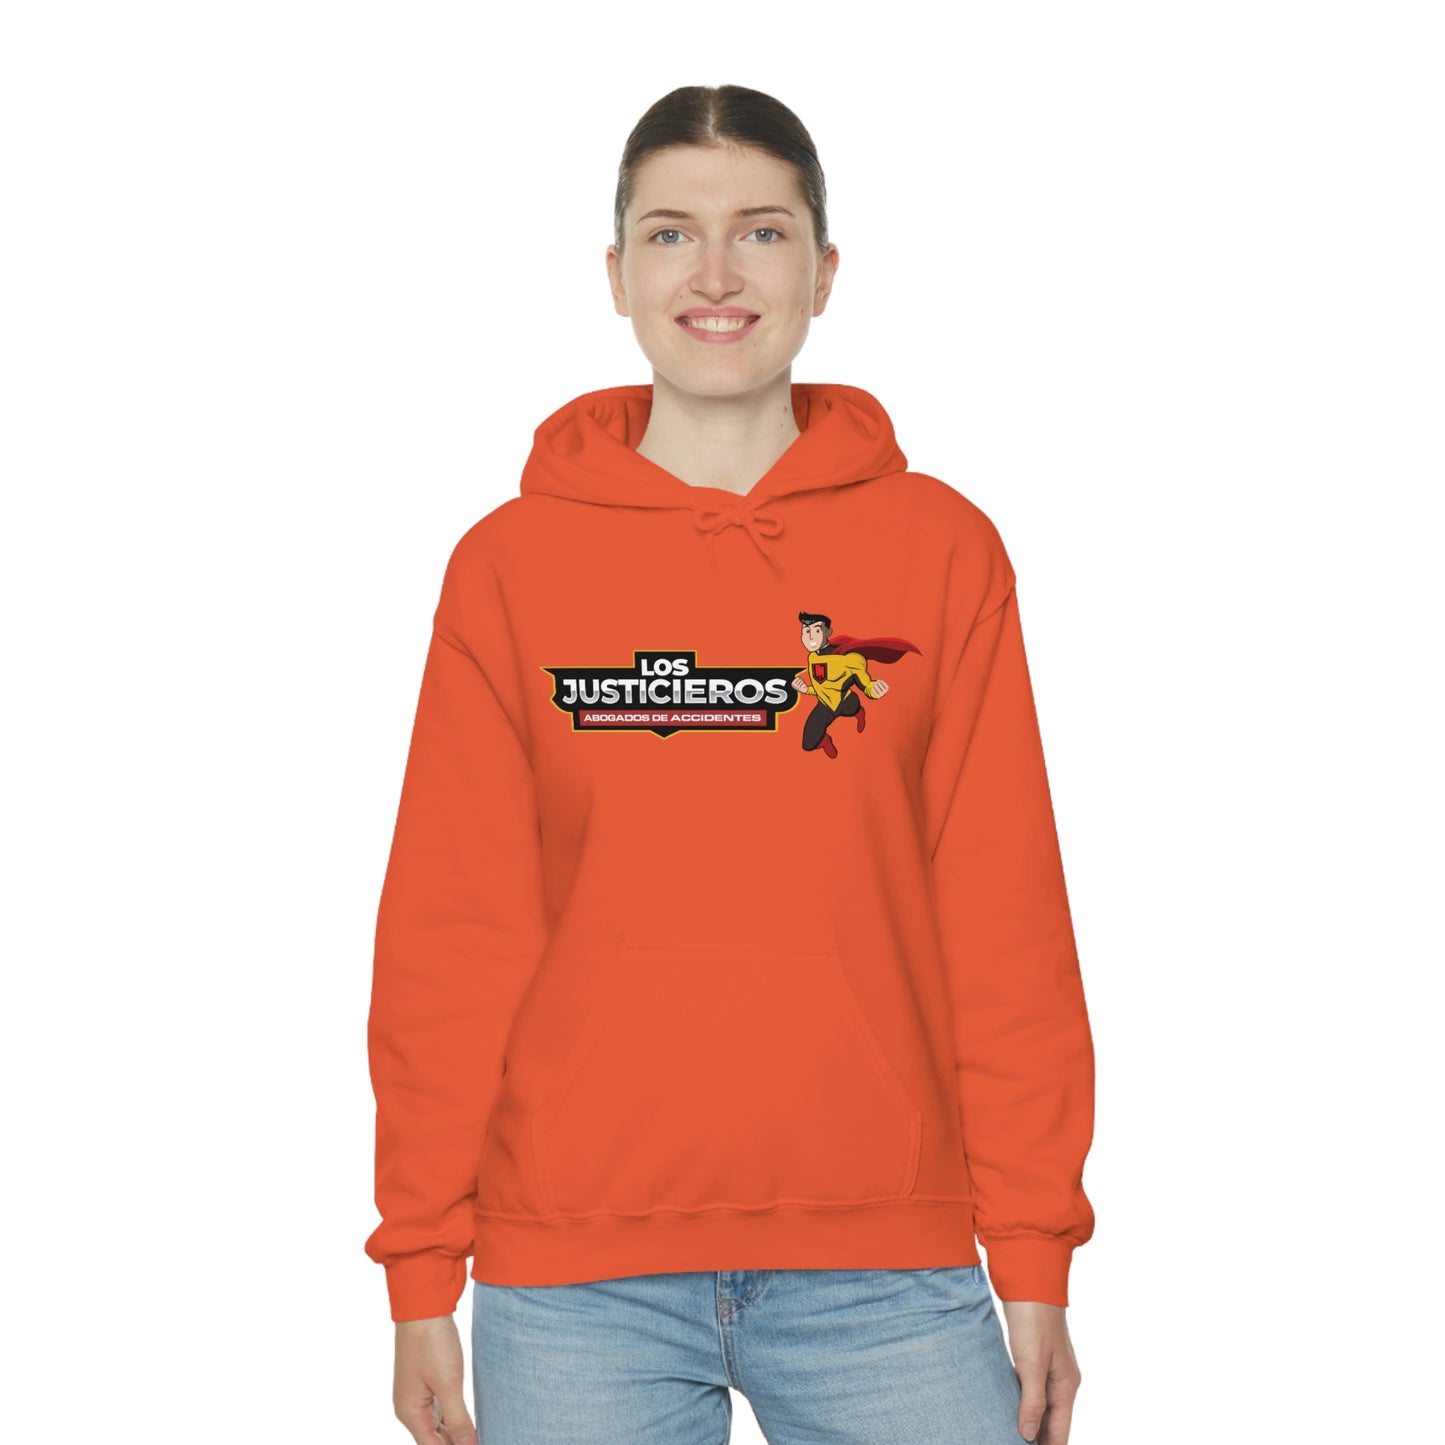 Los Justicieros Unisex Heavy Blend™ Hooded Sweatshirt